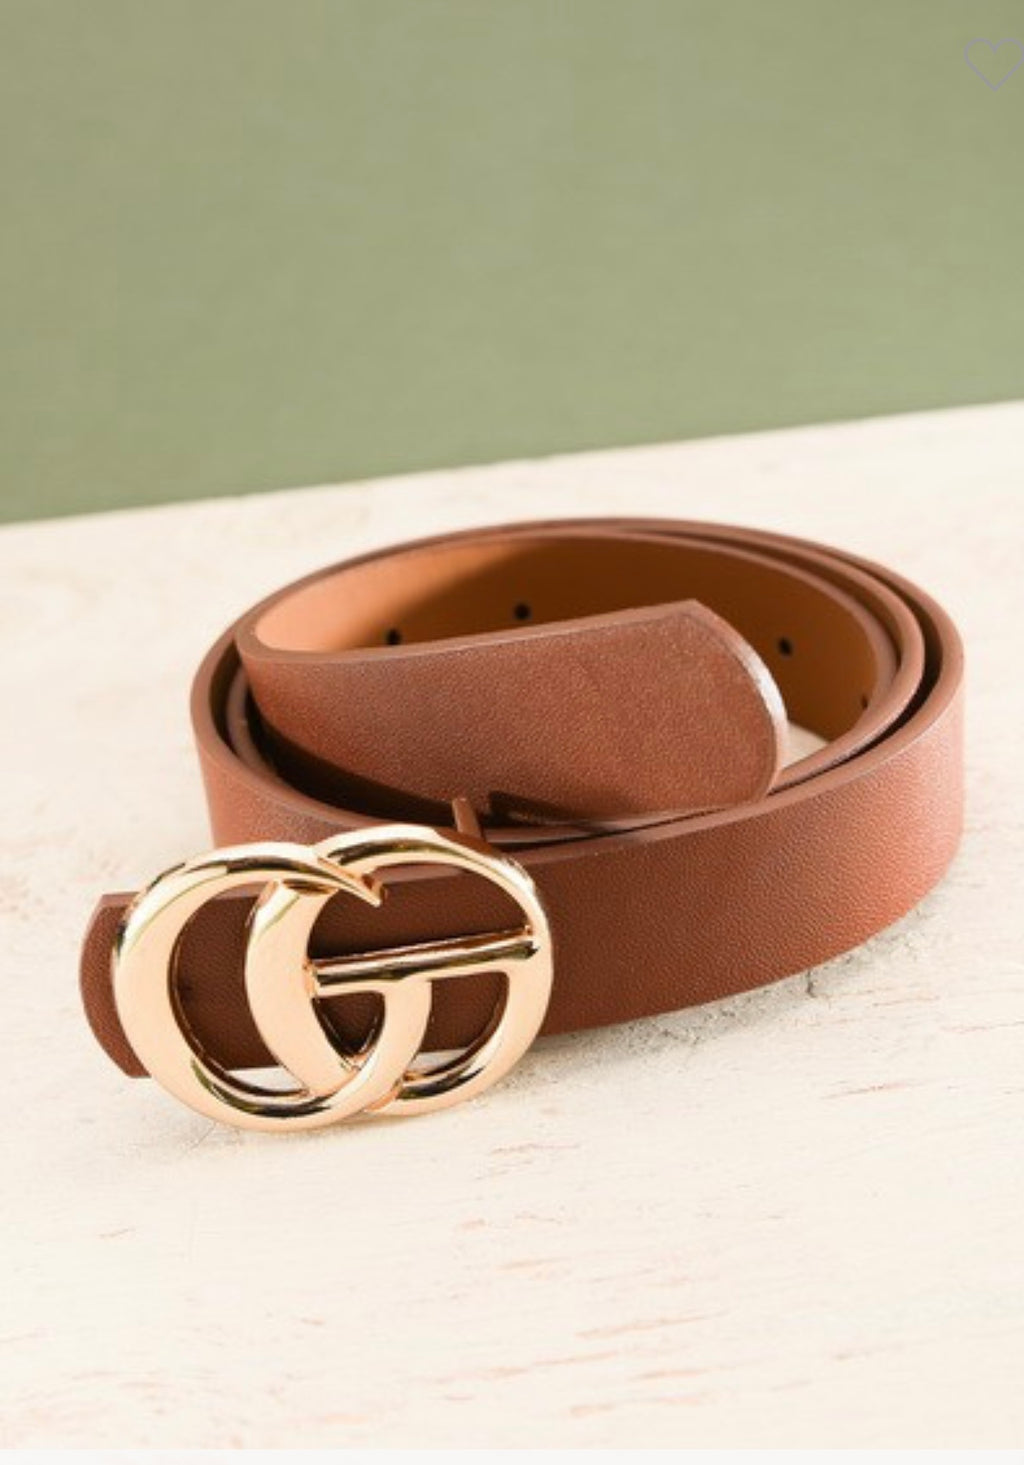 The “GG” Belt